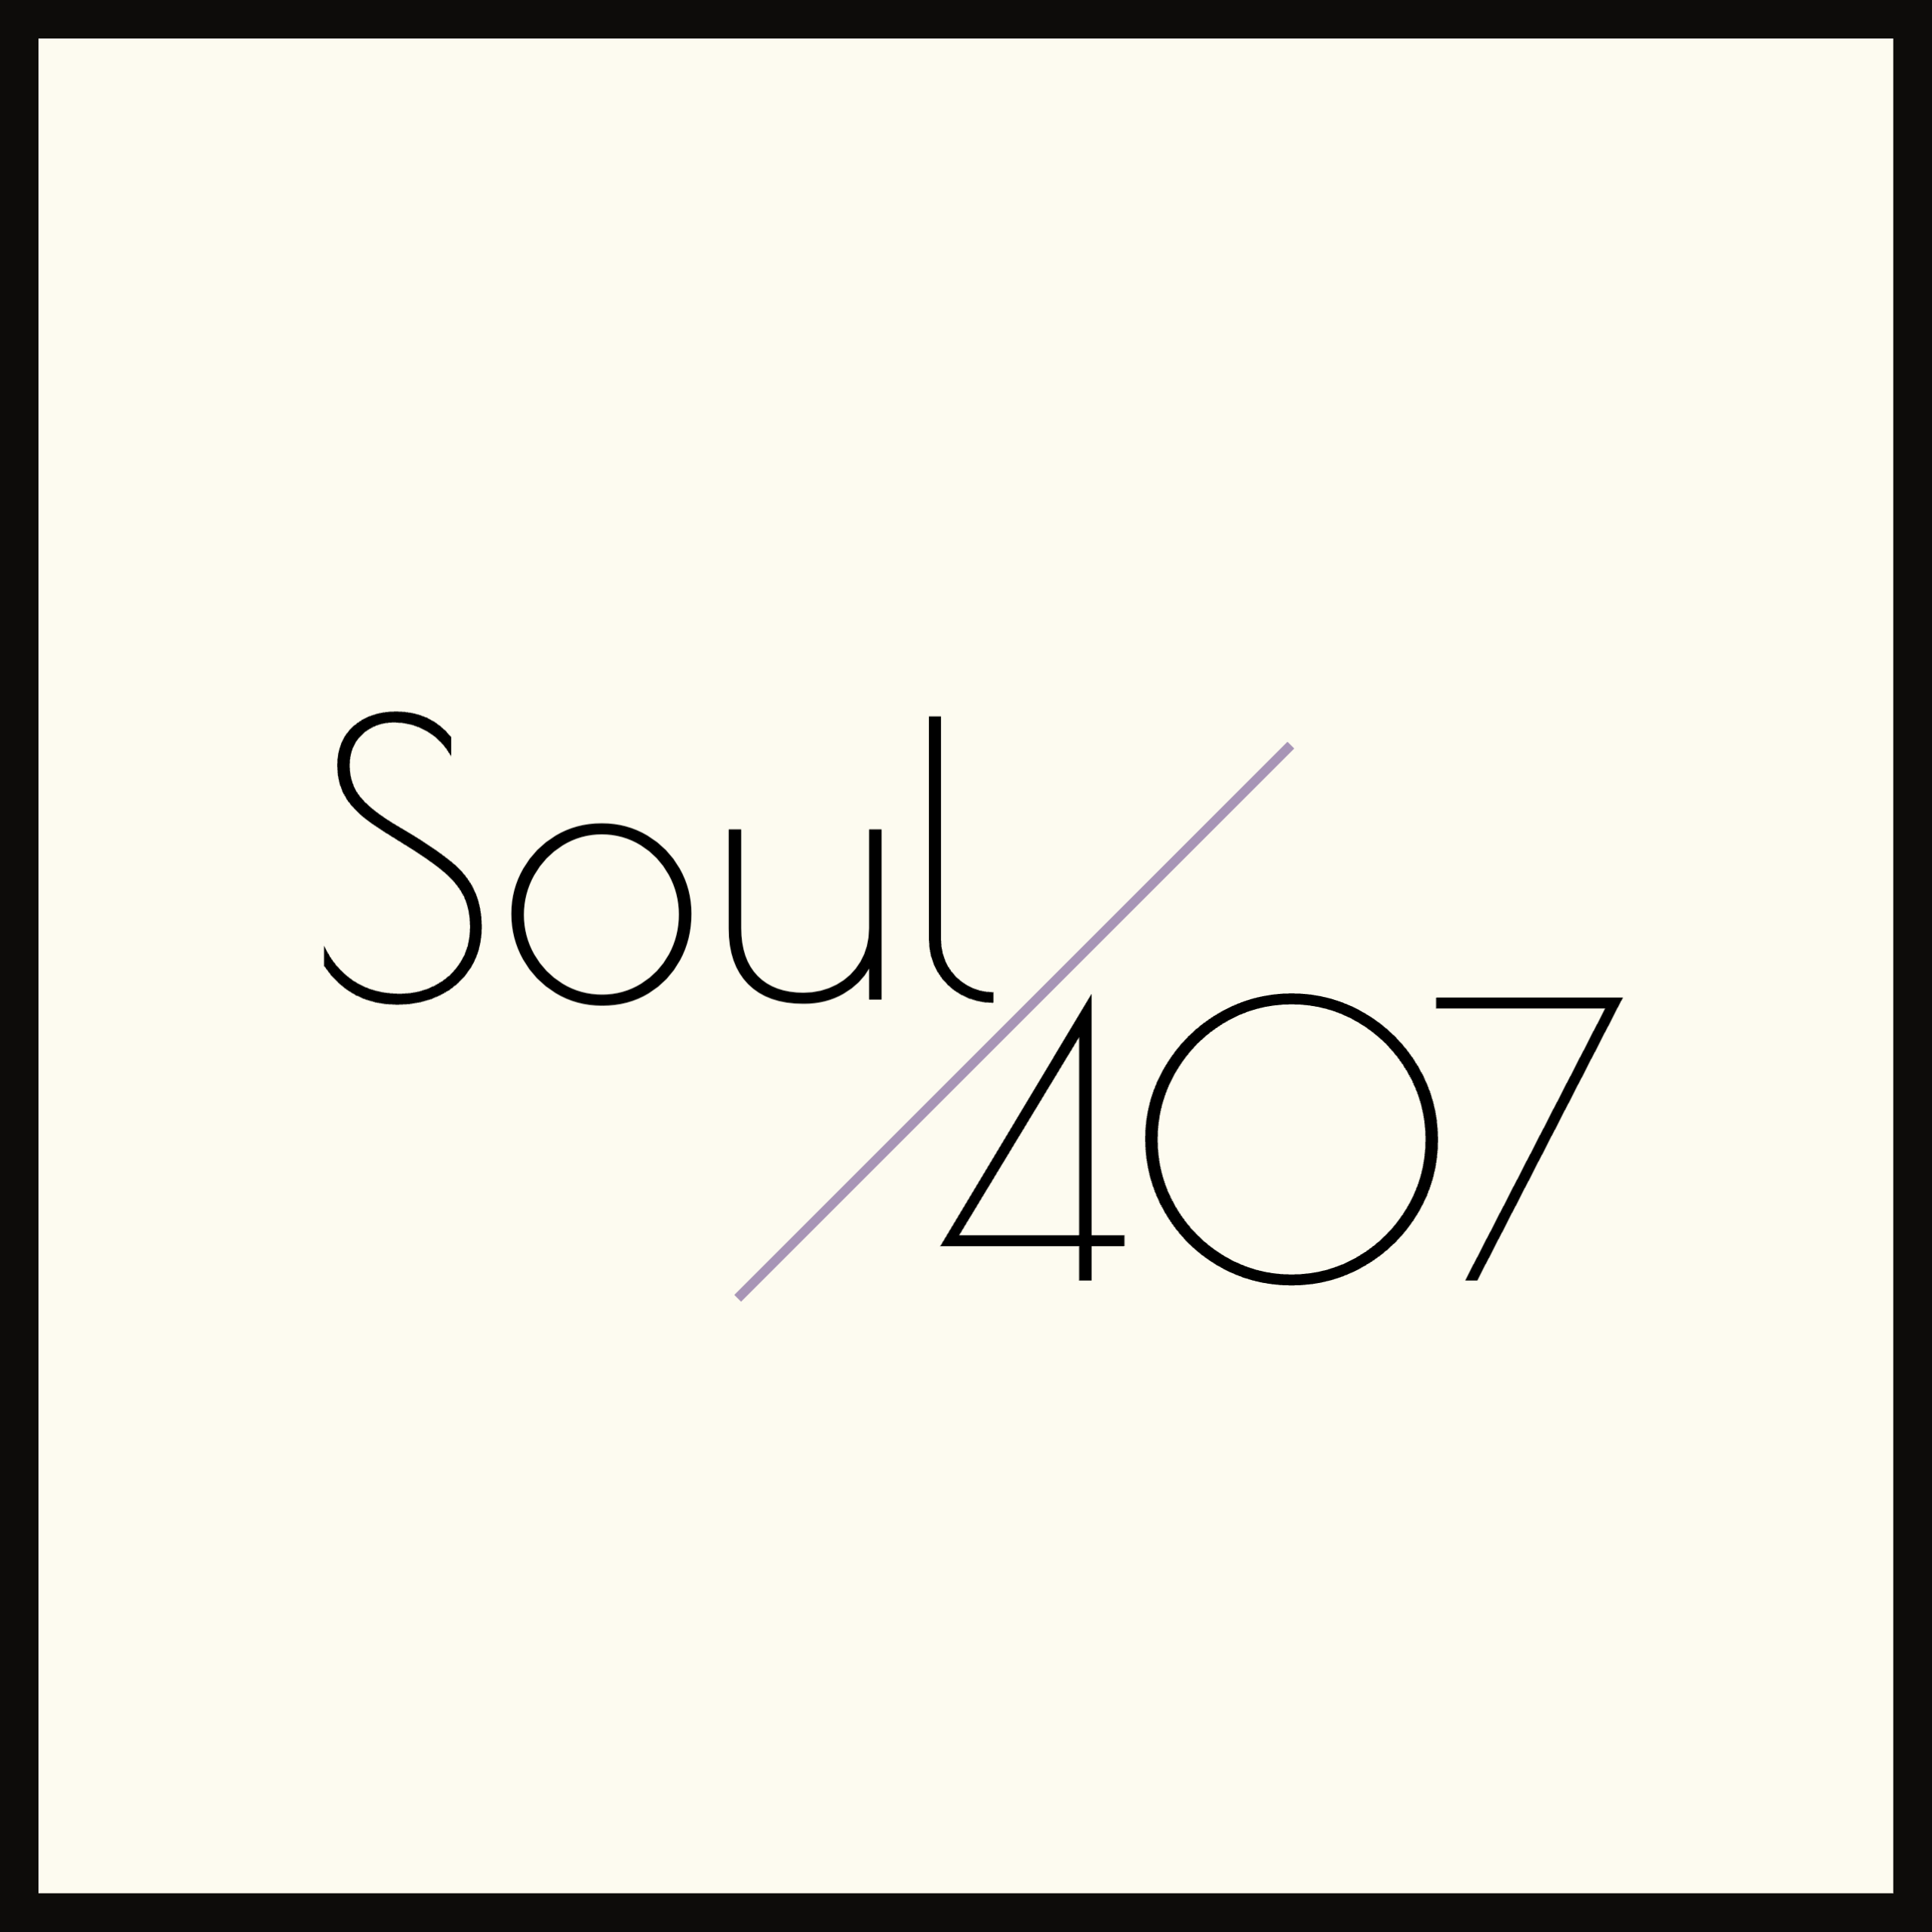 Soul 407